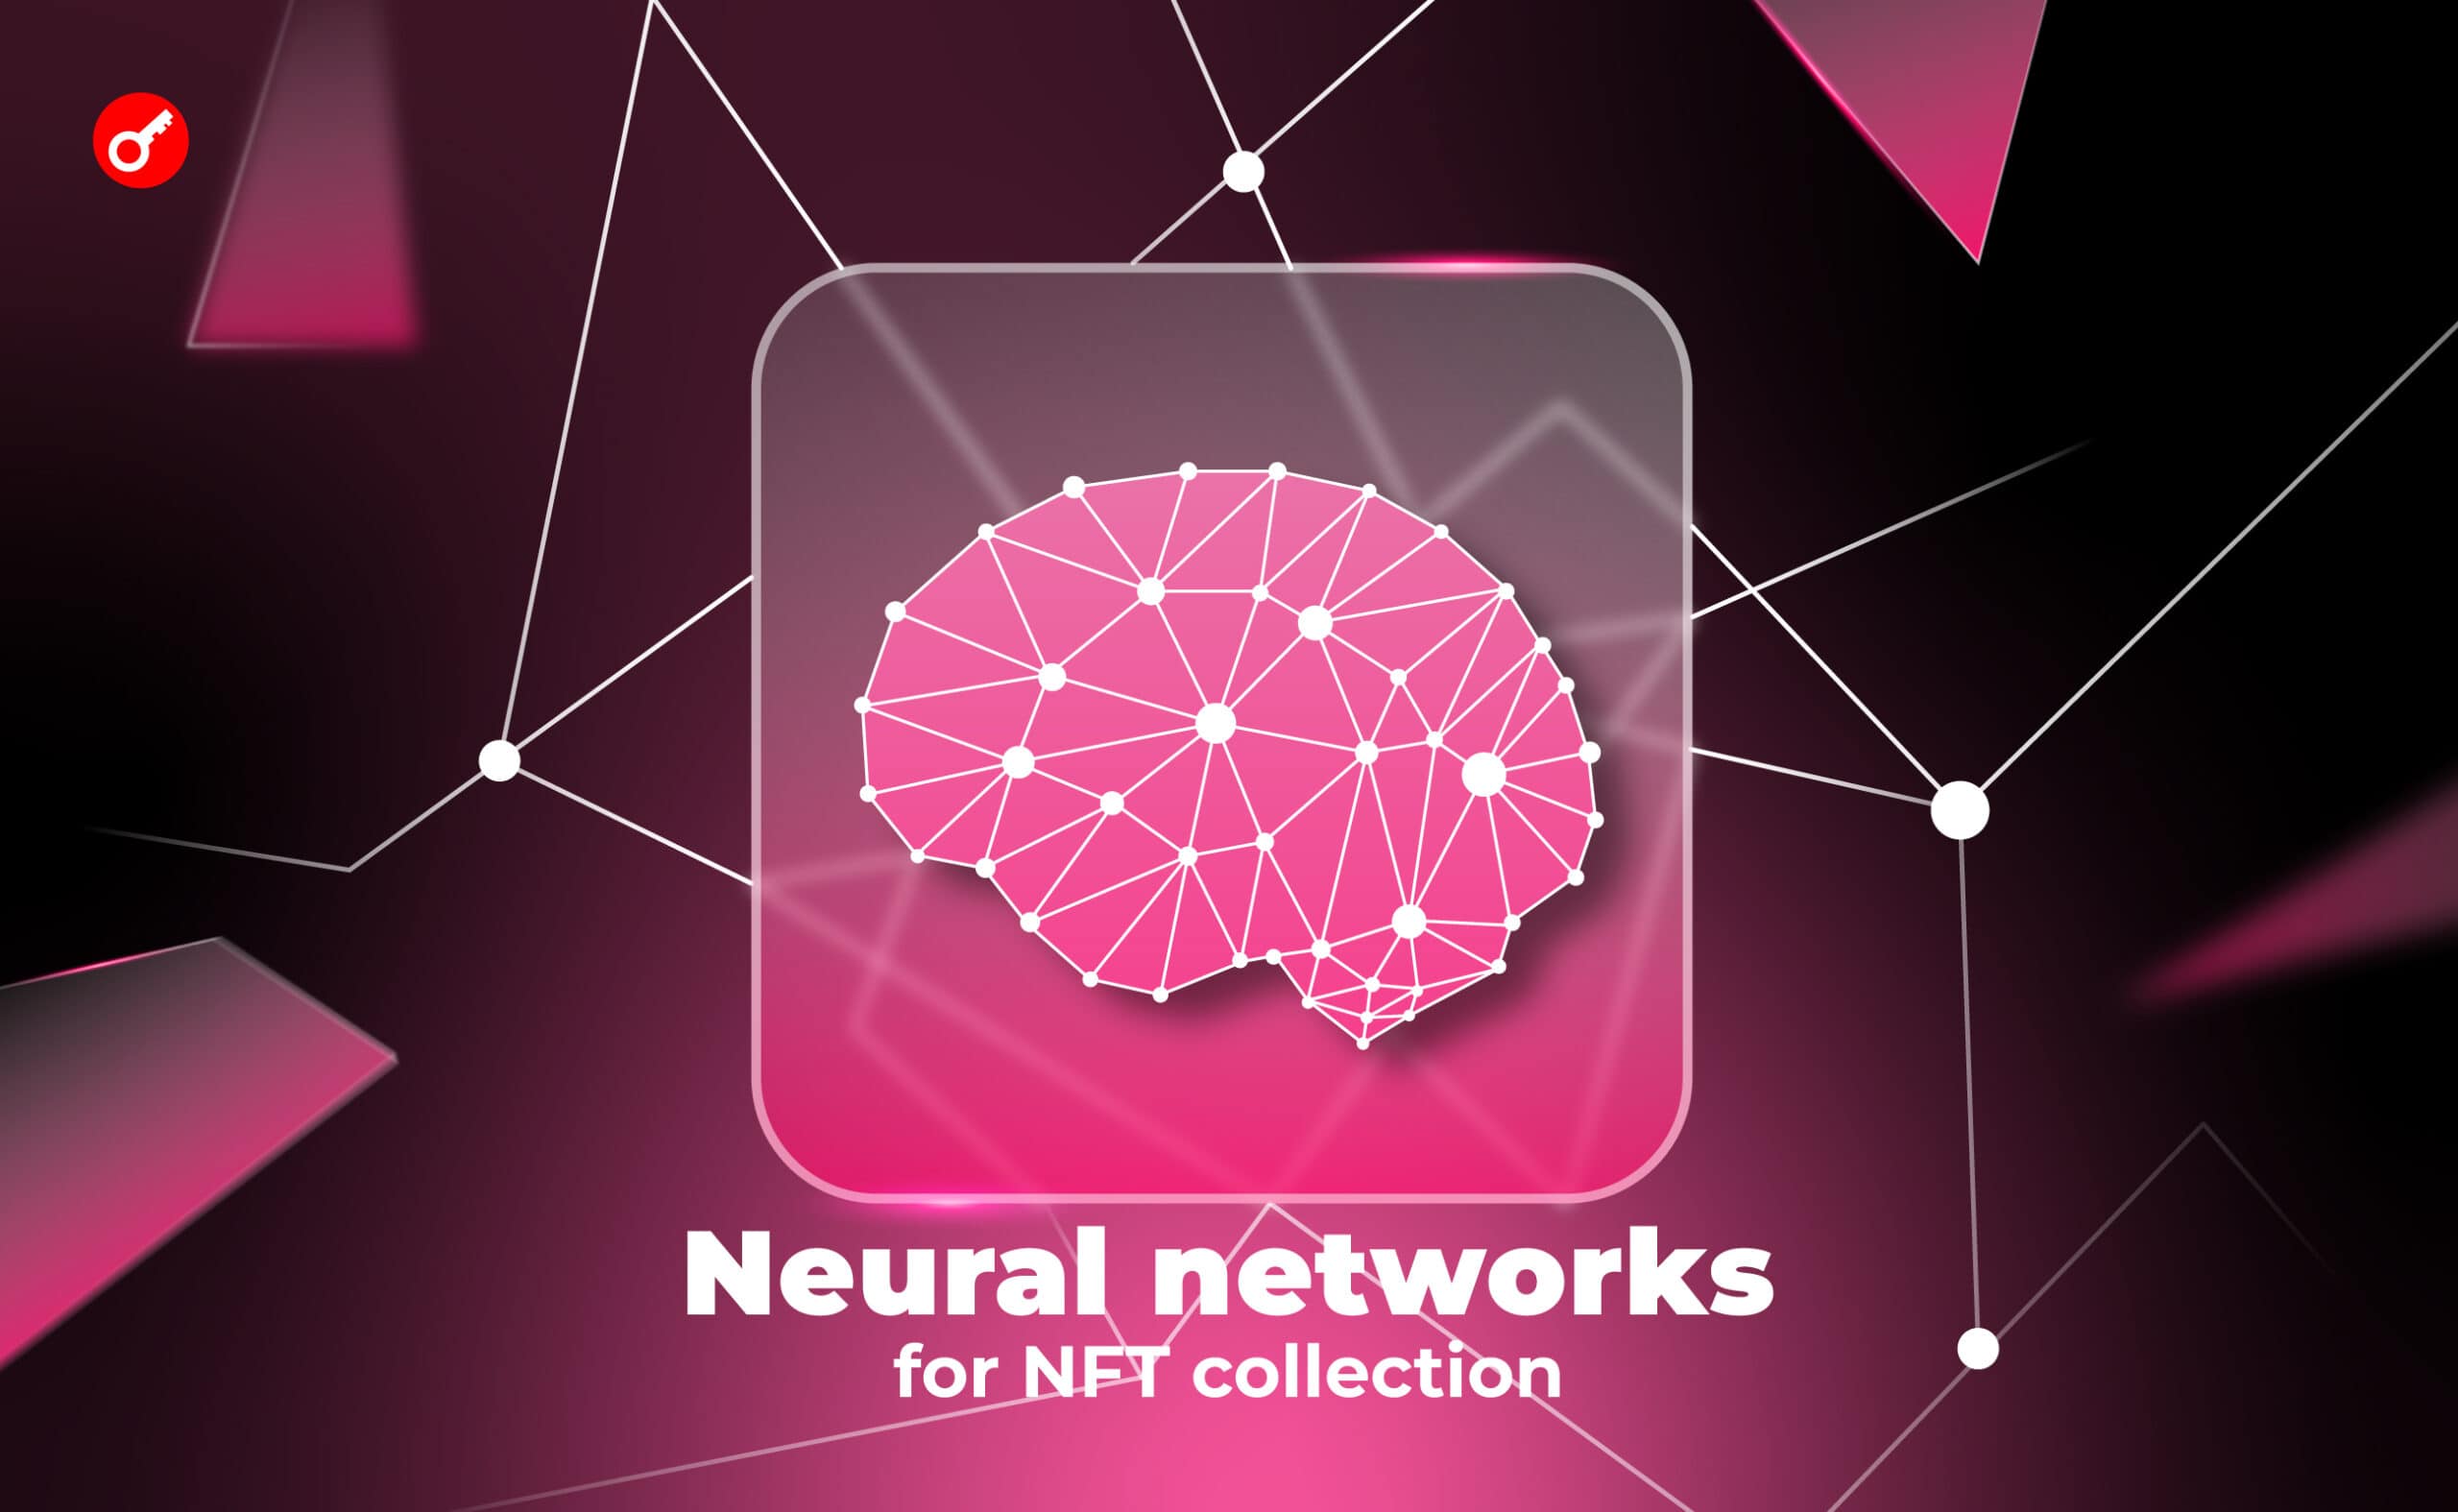 11 najlepszych sieci neuronowych do generowania obrazów według opisu. Utwórz kolekcję NFT za pomocą AI (gotowe podpowiedzi w środku). Główny kolaż artykułu.